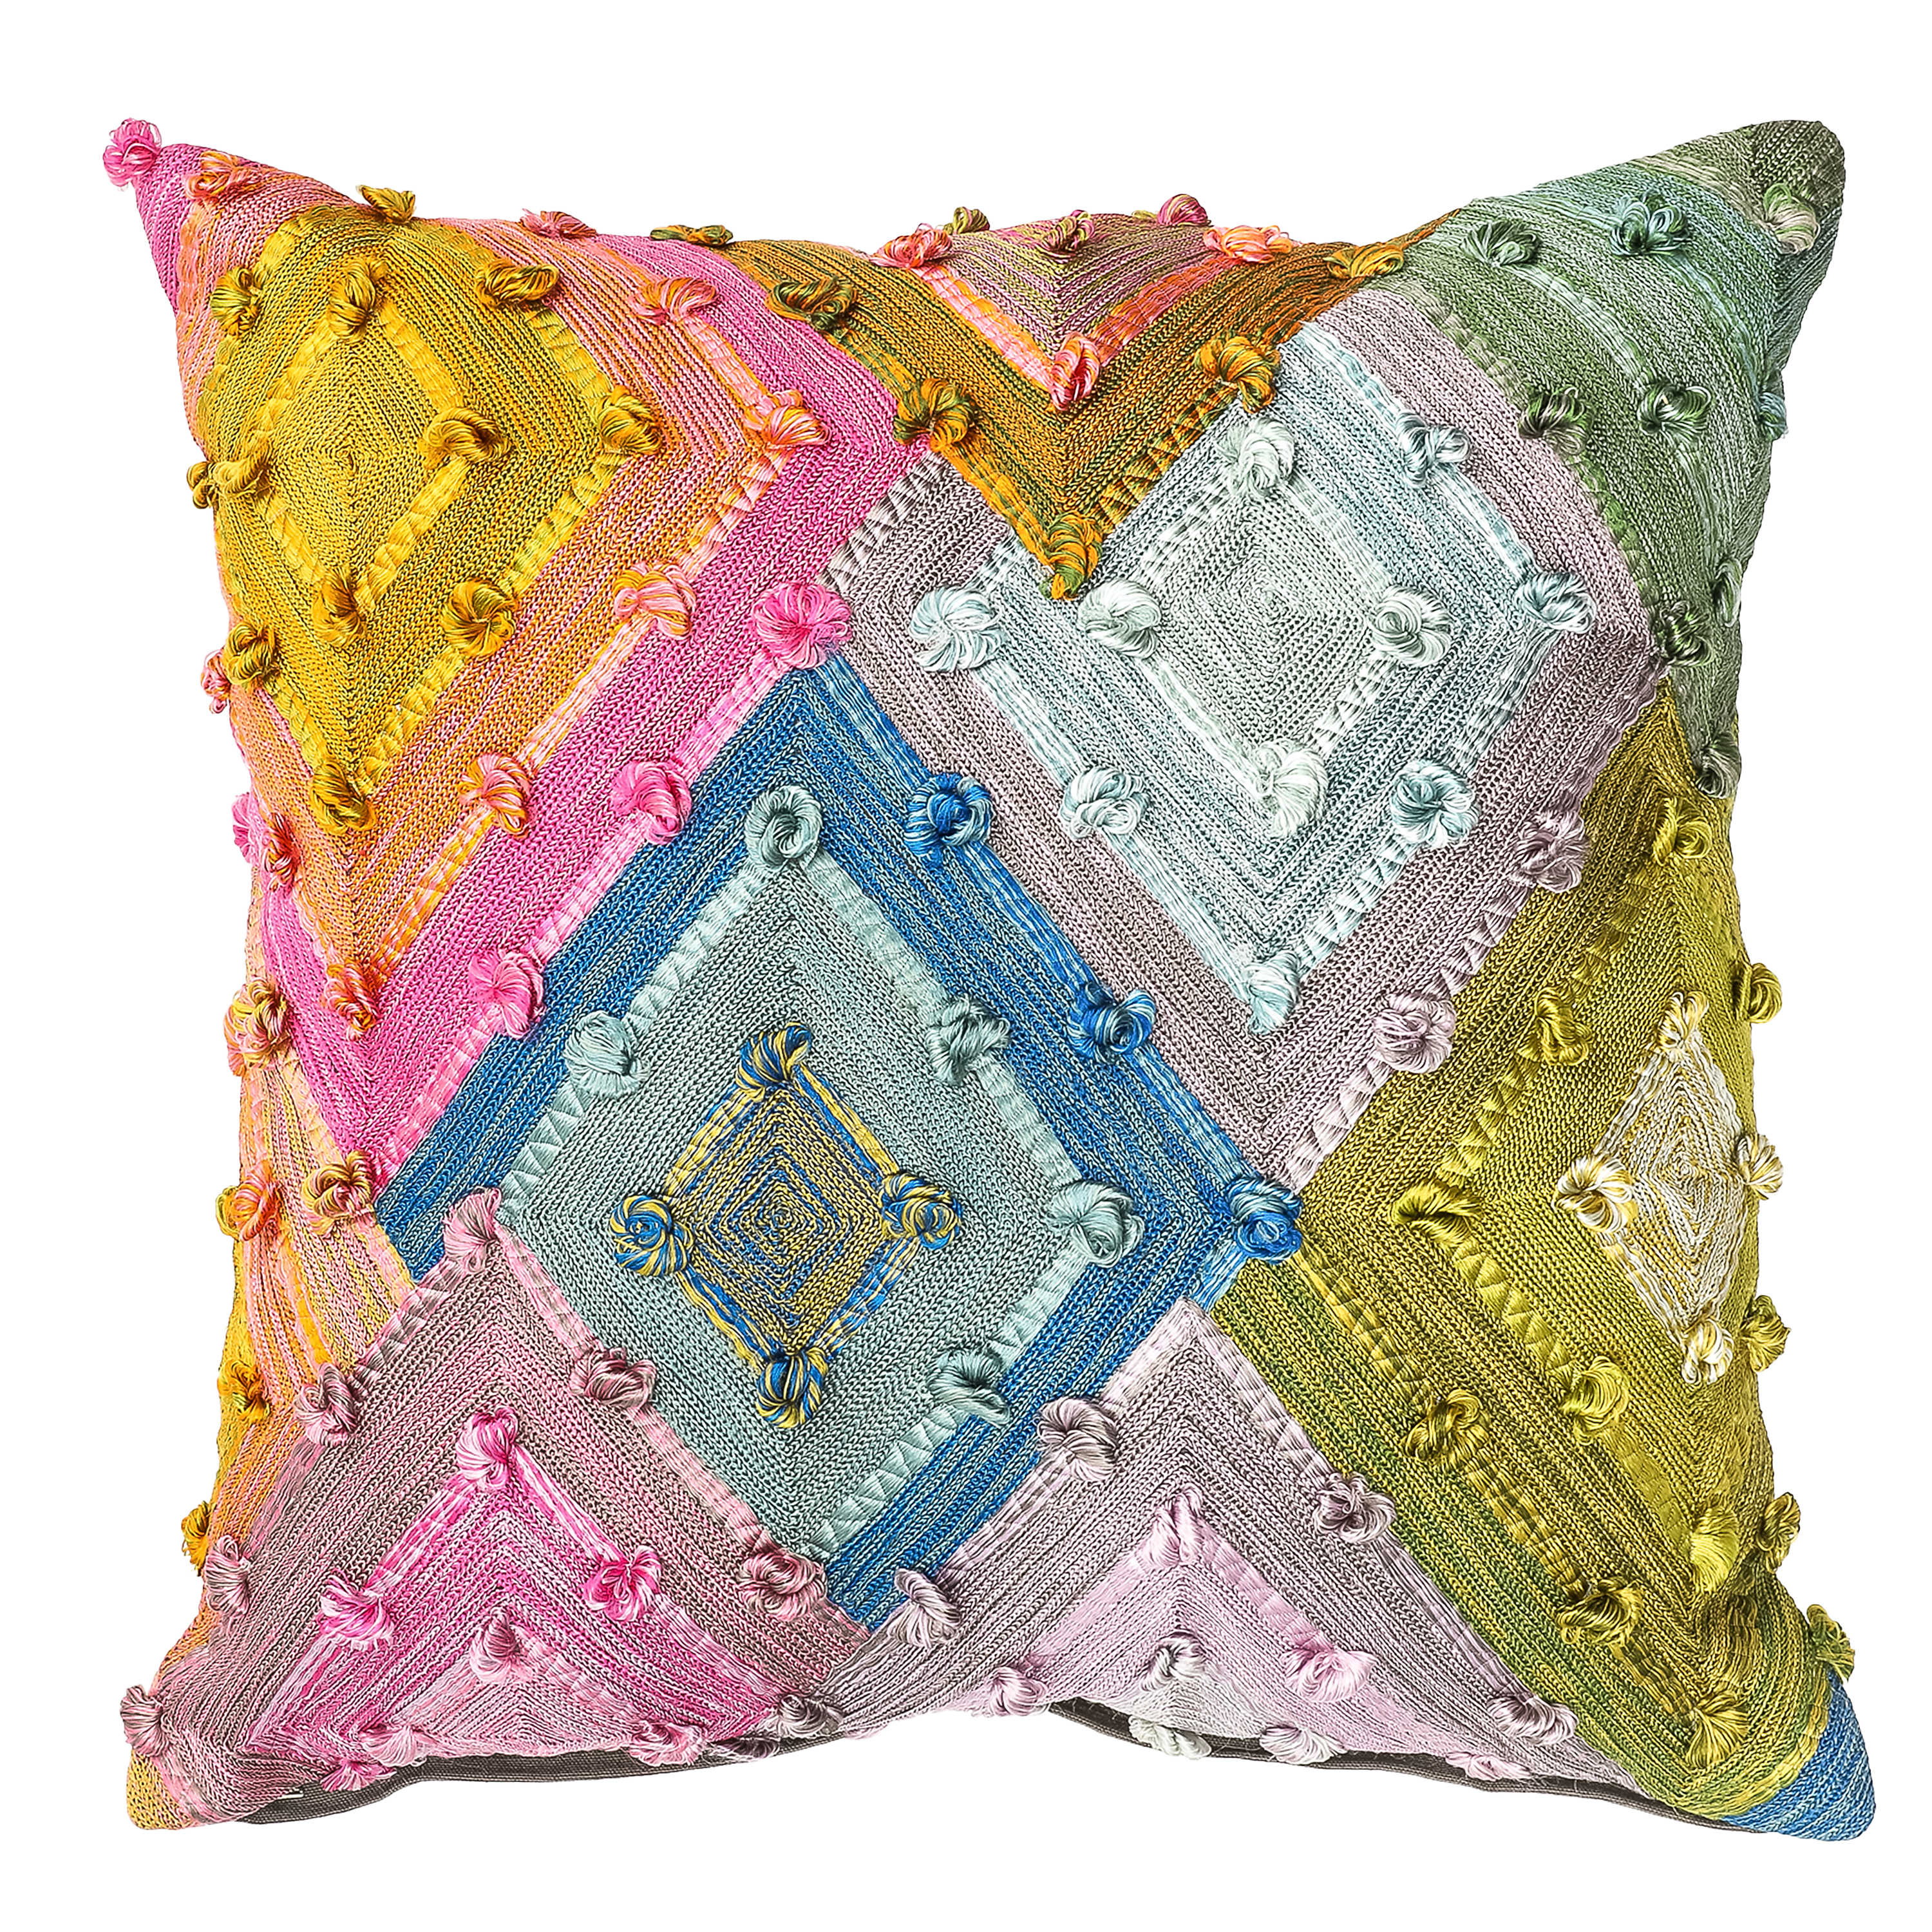 Mosaic Diamond Pillow mackenzie-childs Panama 0